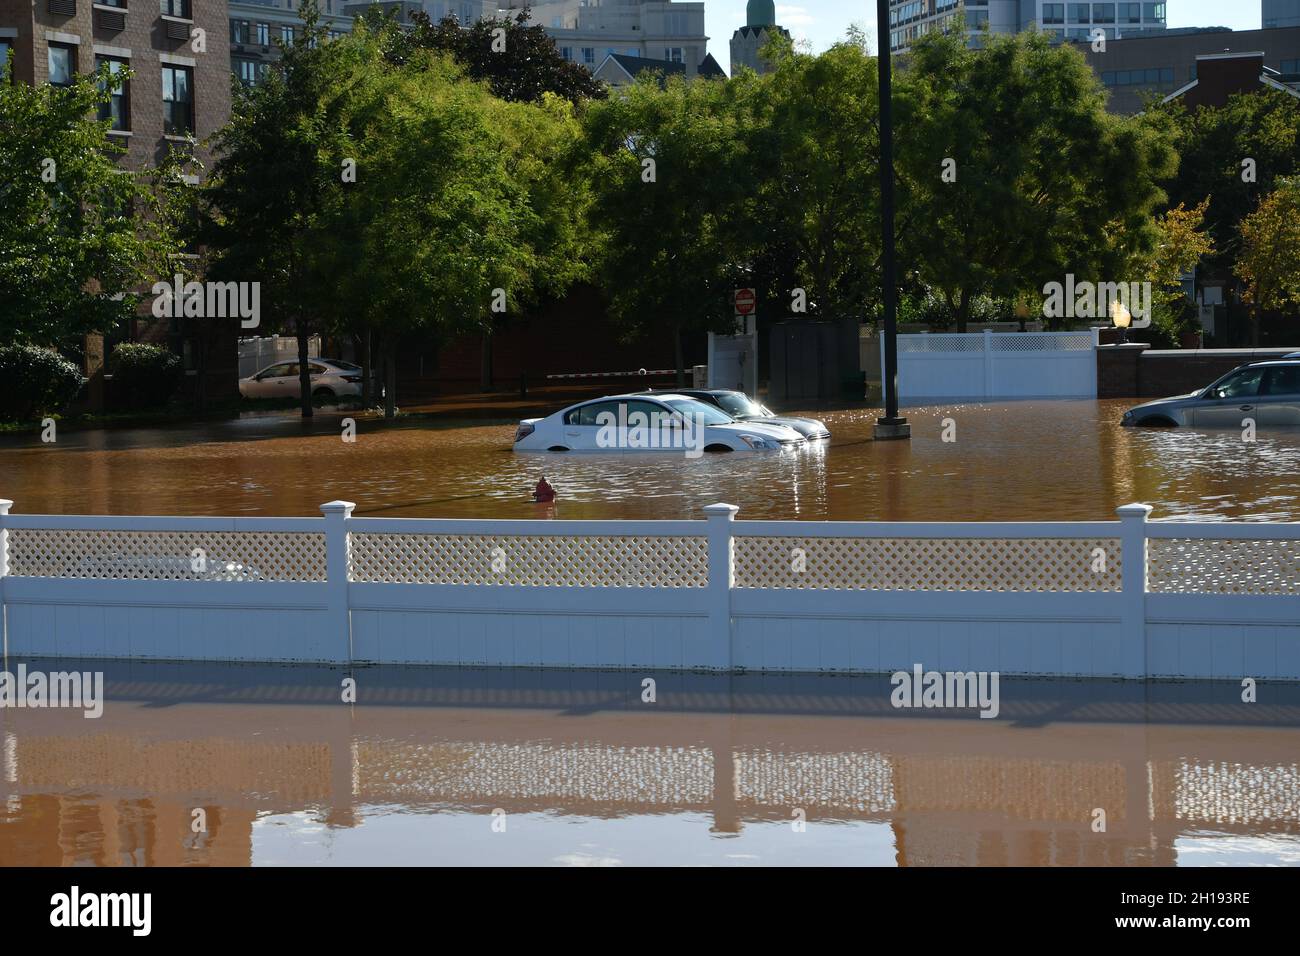 Inondations causées par l'ouragan Ida au Nouveau-Brunswick, NJ Banque D'Images